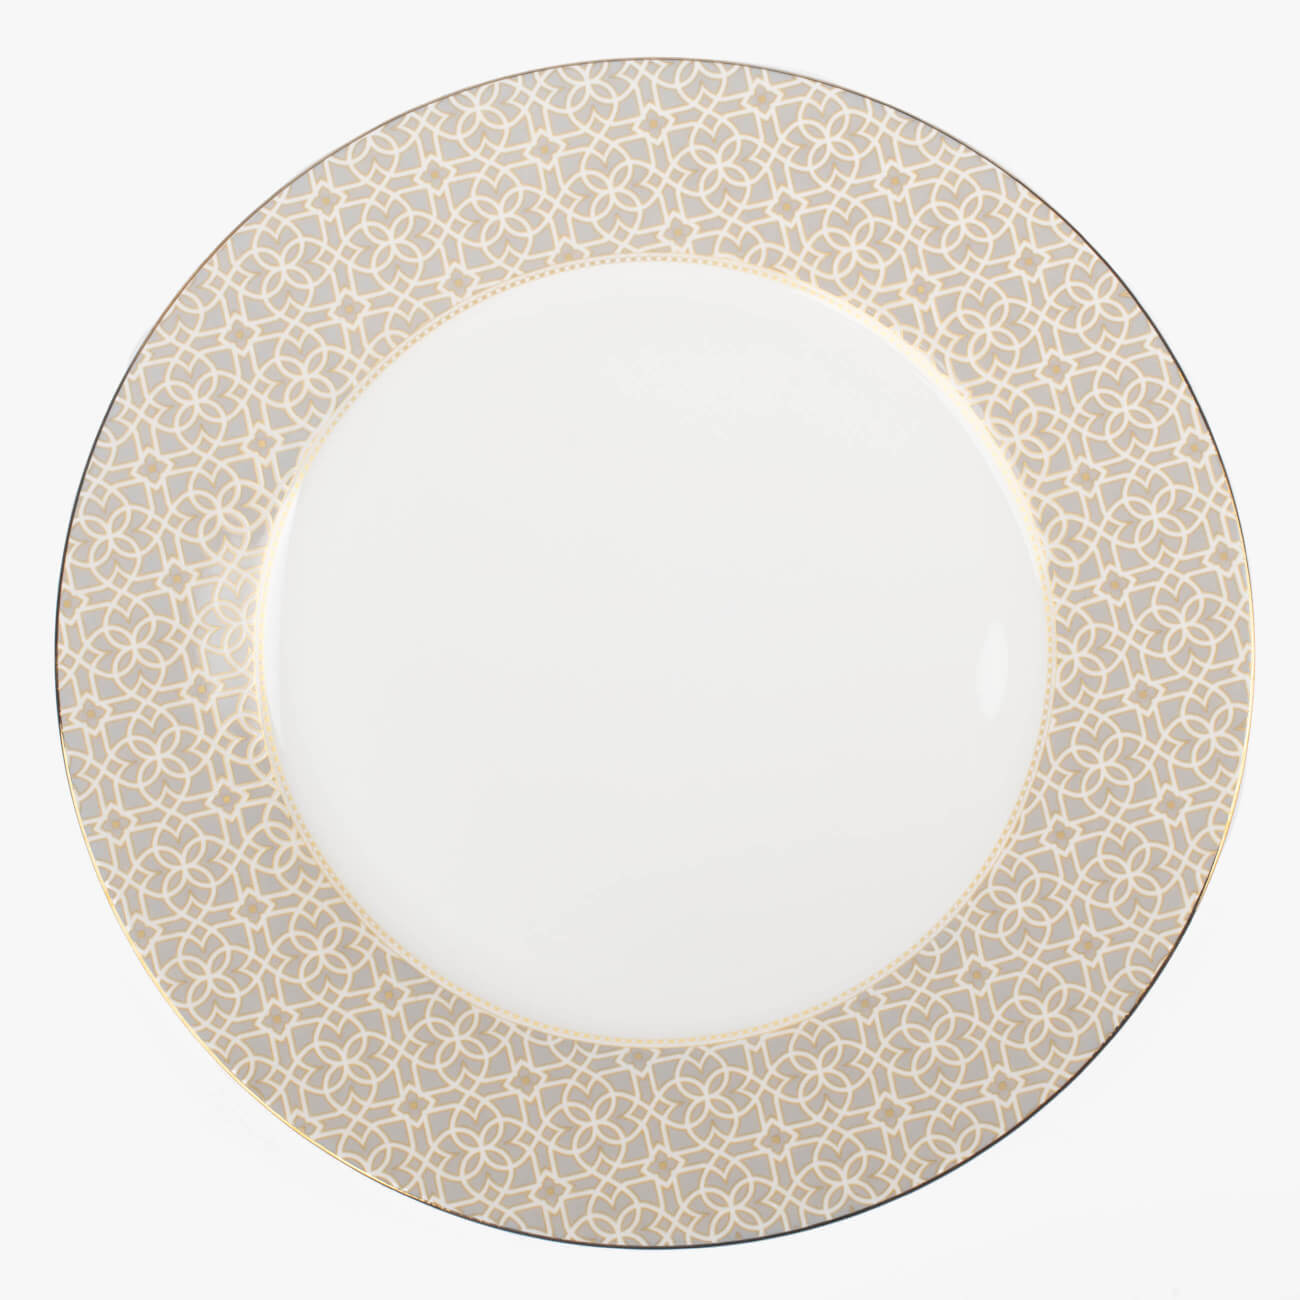 Тарелка обеденная, 27 см, фарфор F, серая, с золотистым кантом, Орнамент, Liberty тарелка для пасты portmeirion газания 20 см